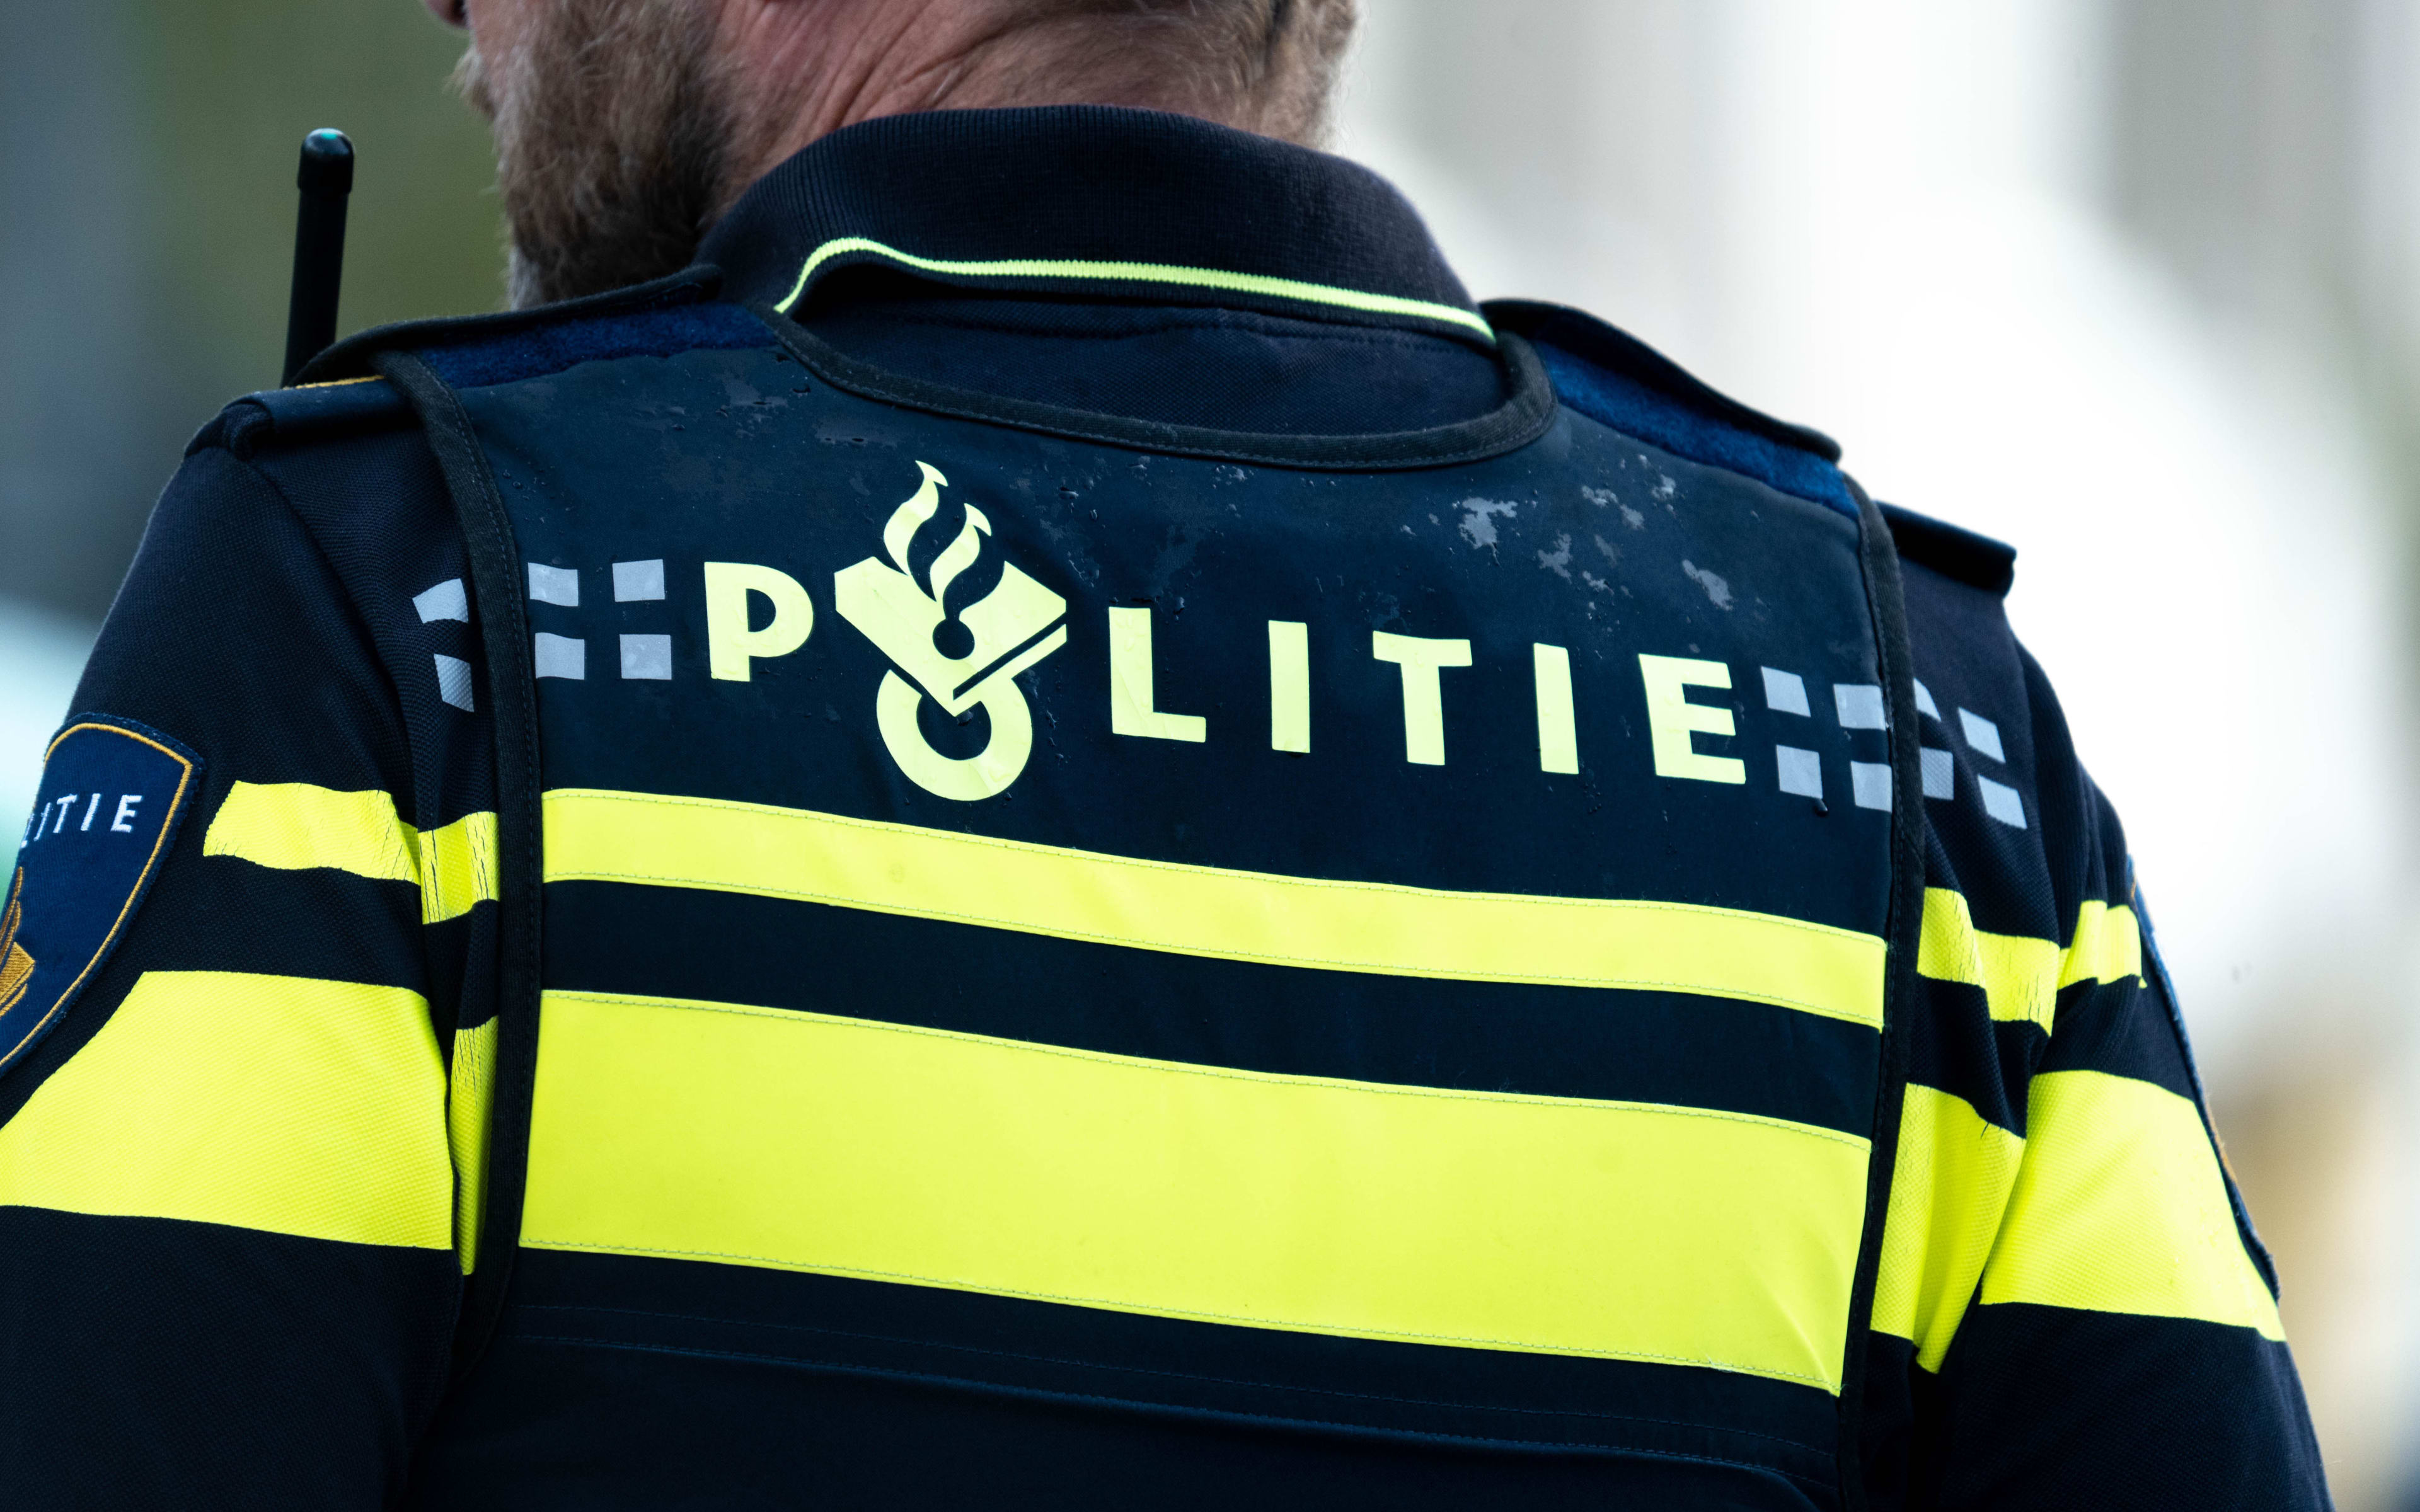 Meerdere vrouwen van fiets getrokken en mishandeld in Amsterdam